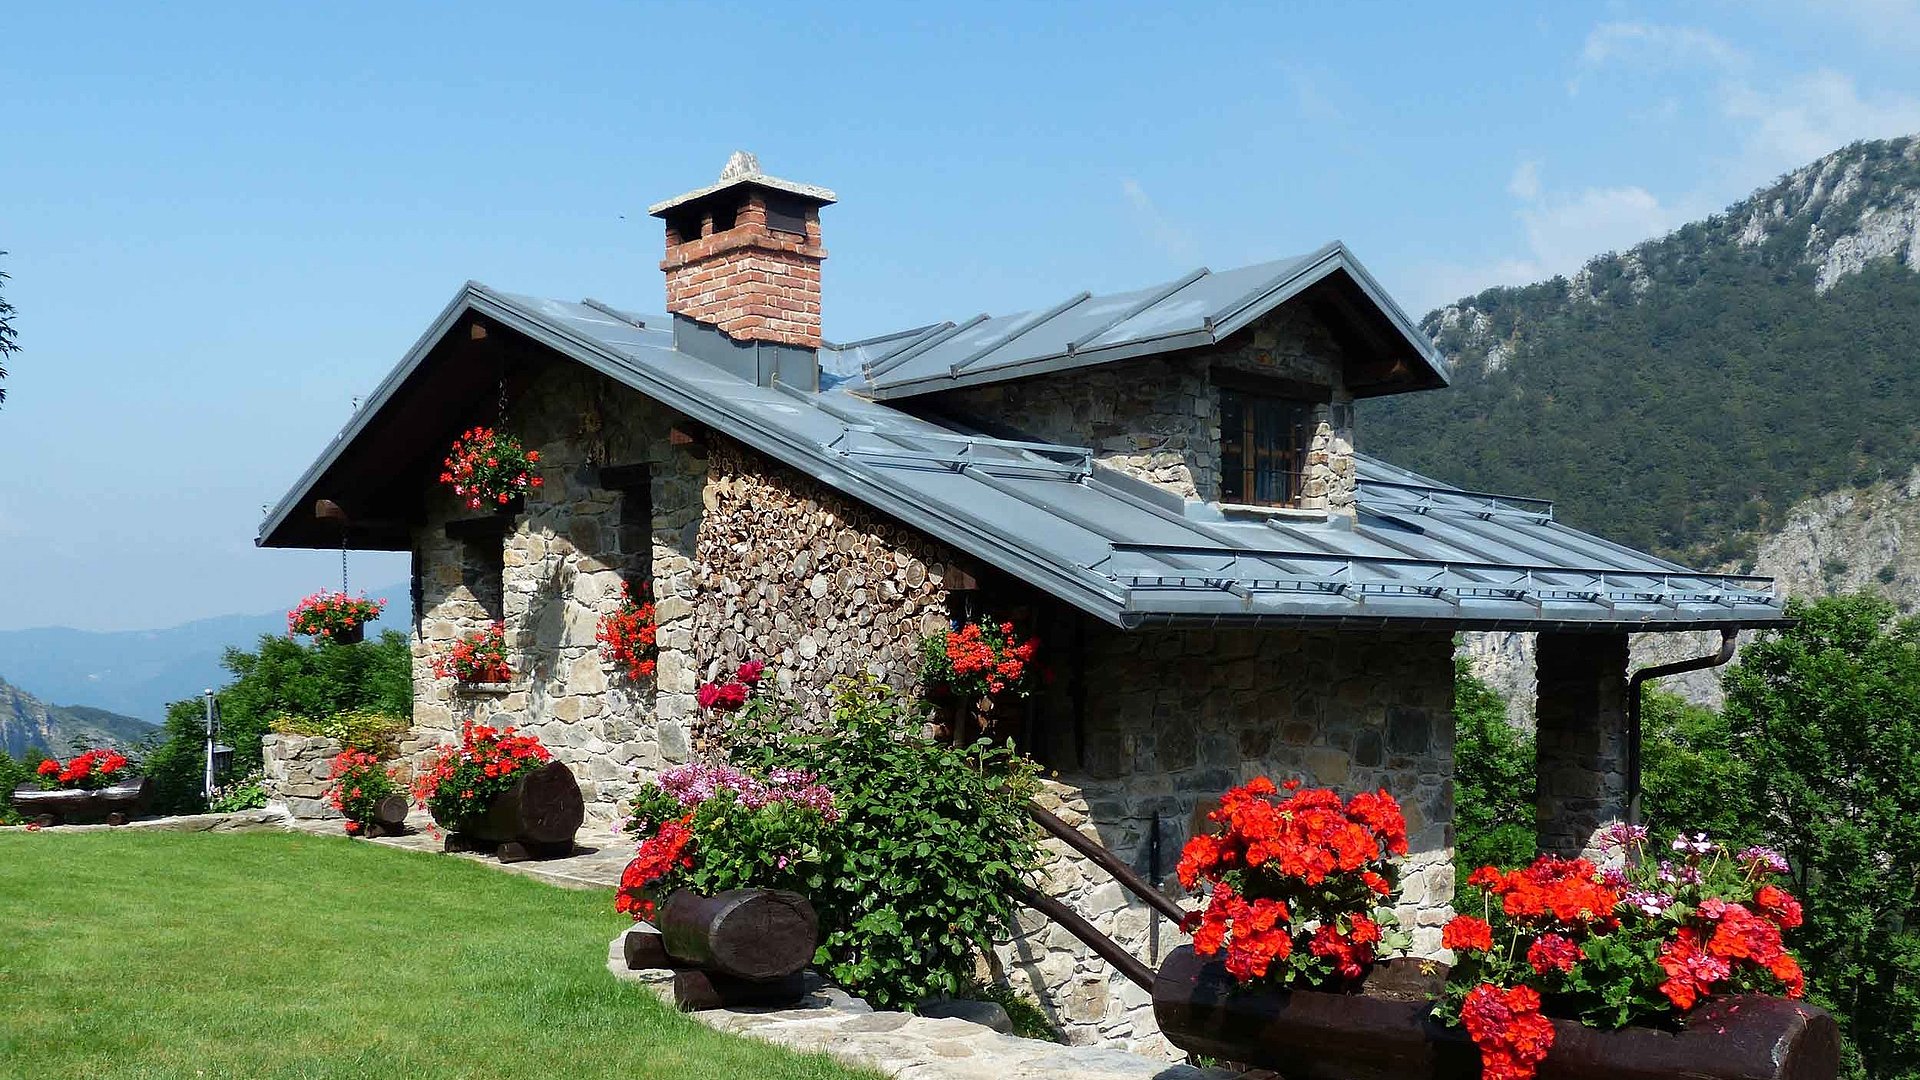 Ferienwohnungen und Ferienhäuser für Gruppen im Oberallgäu - mittelgroßes Ferienhaus mit grüner Wiese und Blumenbeeten, im Hintergrund Hügellandschaft bei klaren Himmel